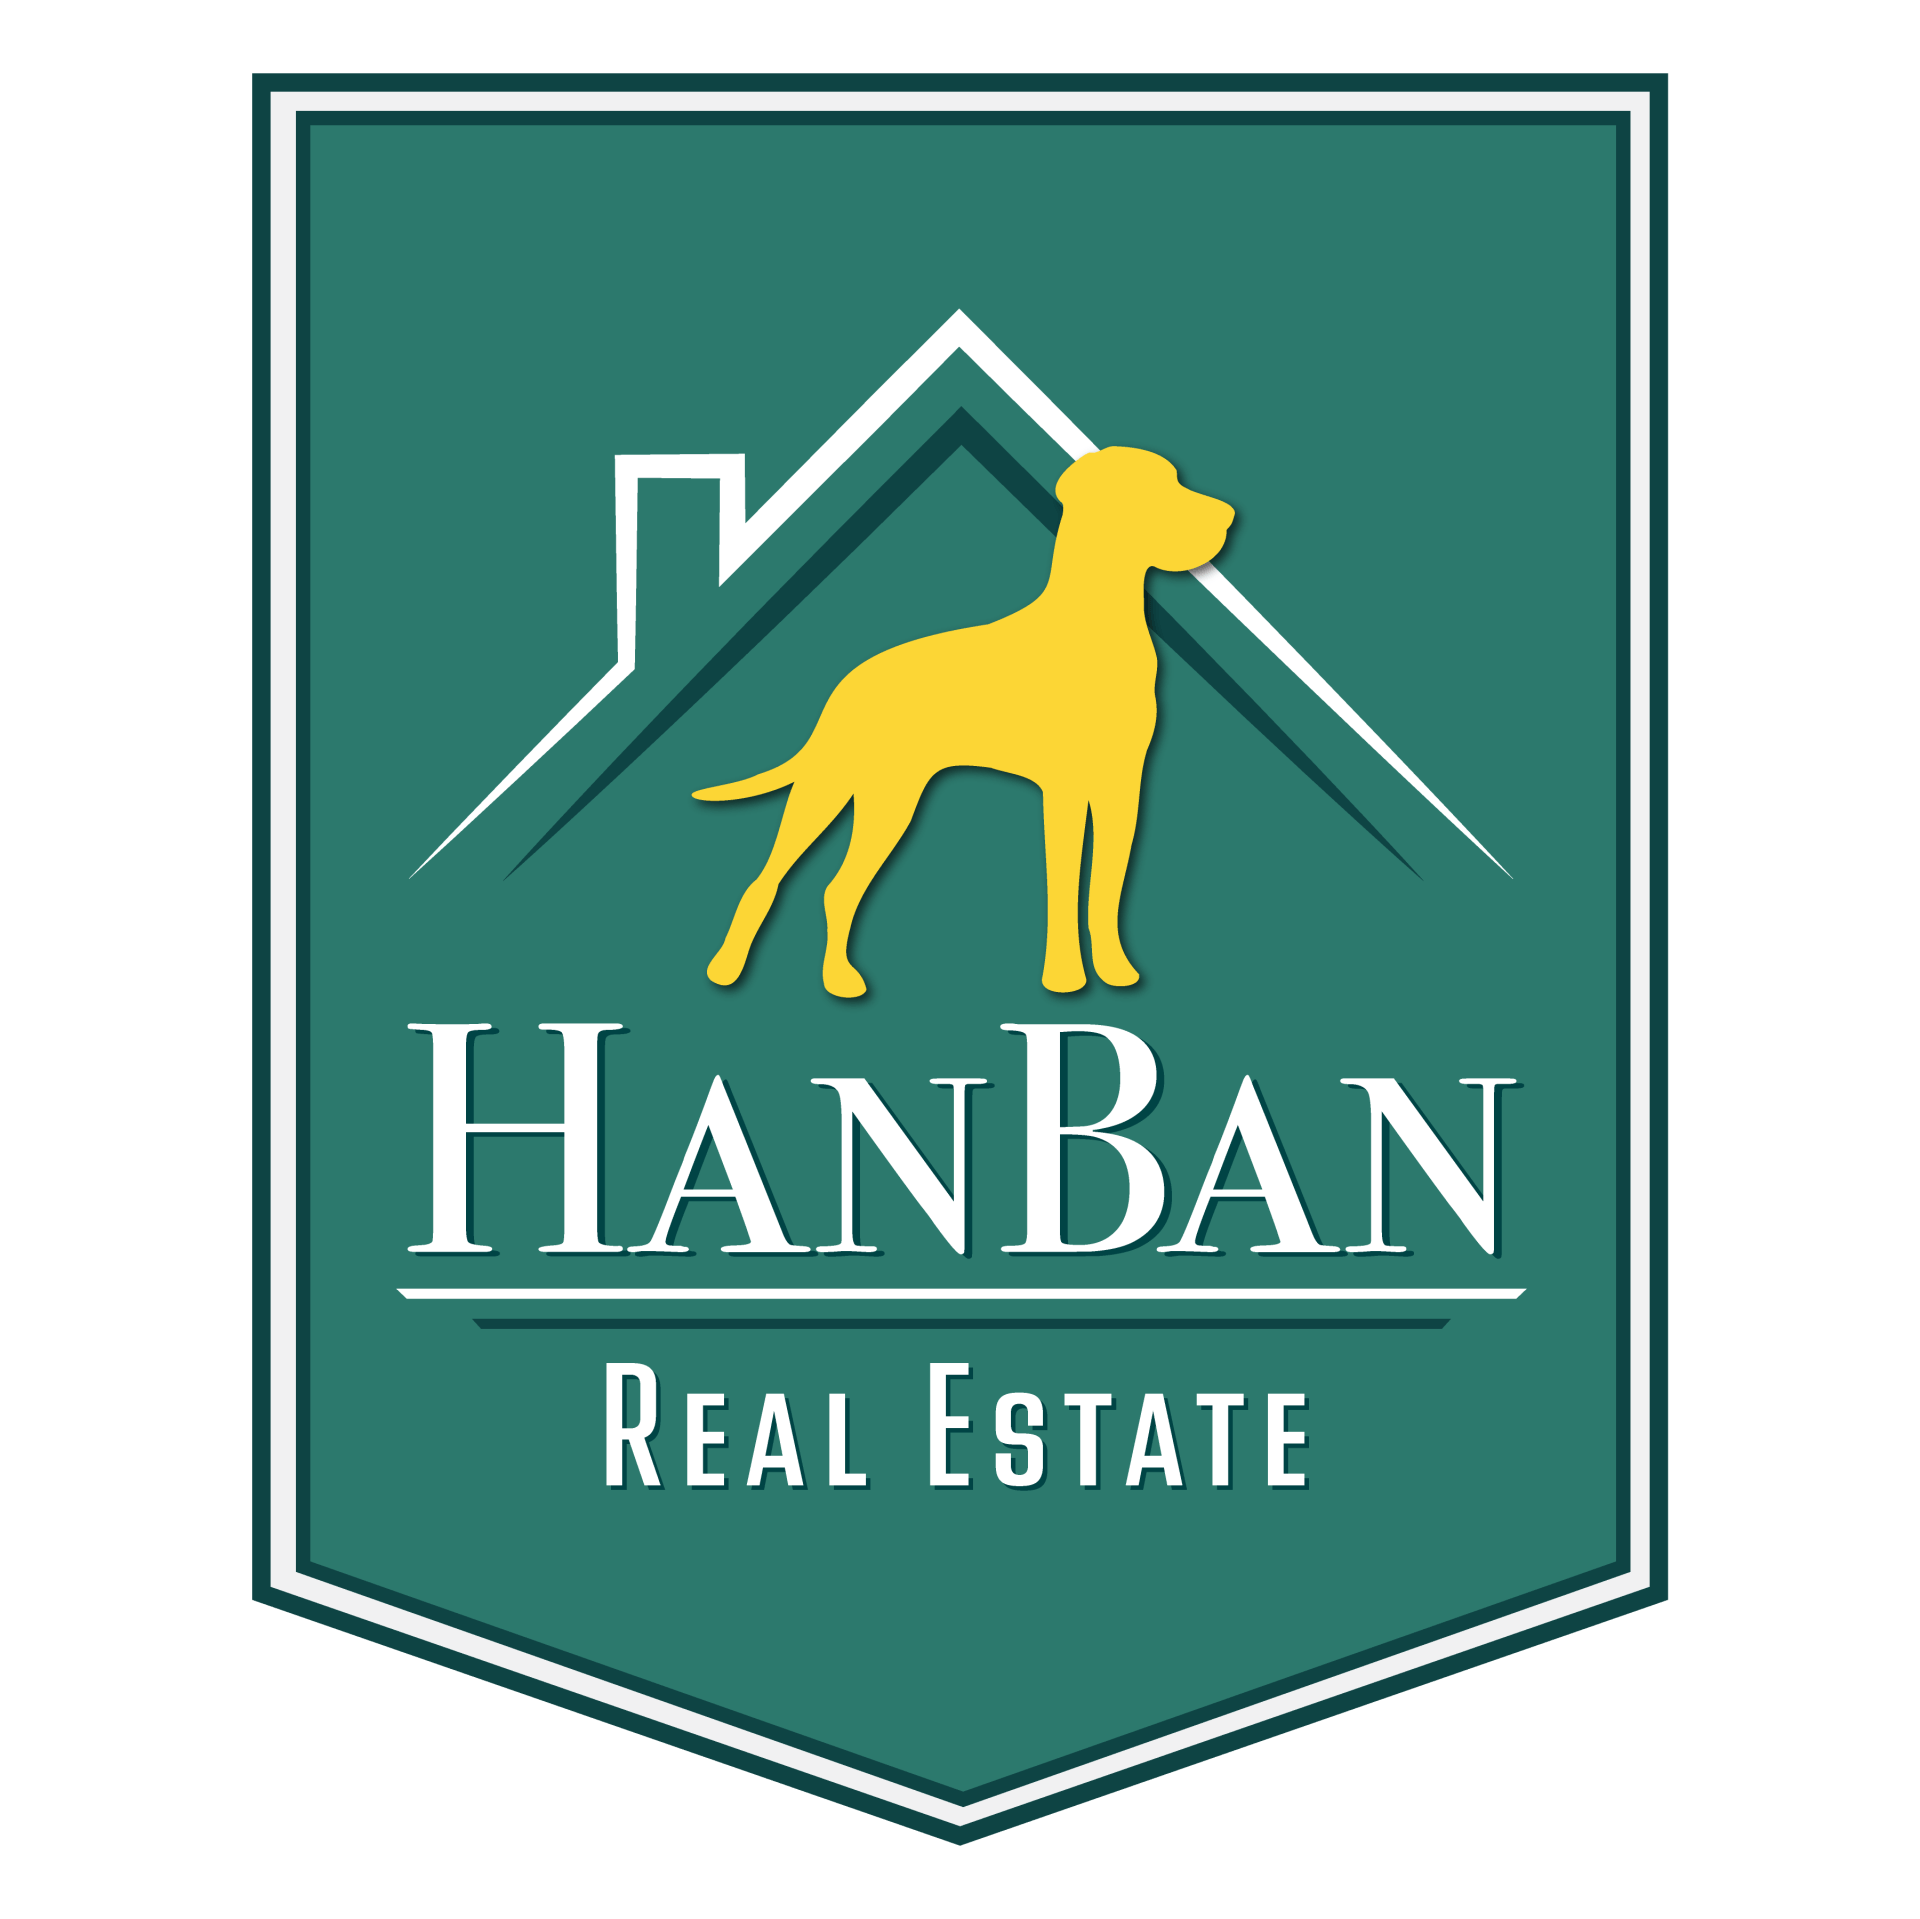 HanBan Real Estate logo